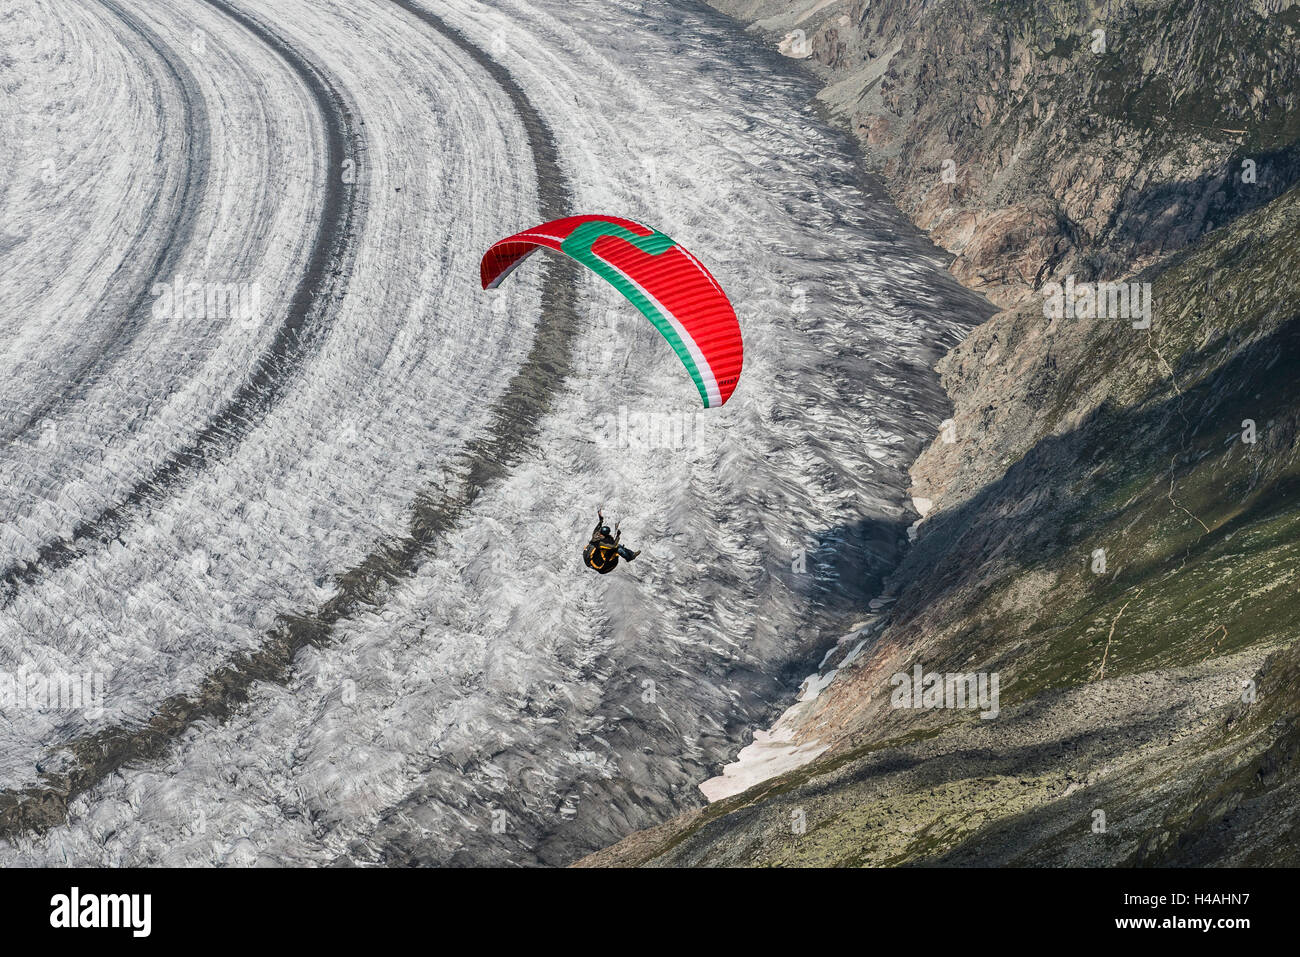 Paraglider above Aletsch glacier, paraglider, aerial picture, Eggishorn, Fiesch, Valais, Switzerland Stock Photo